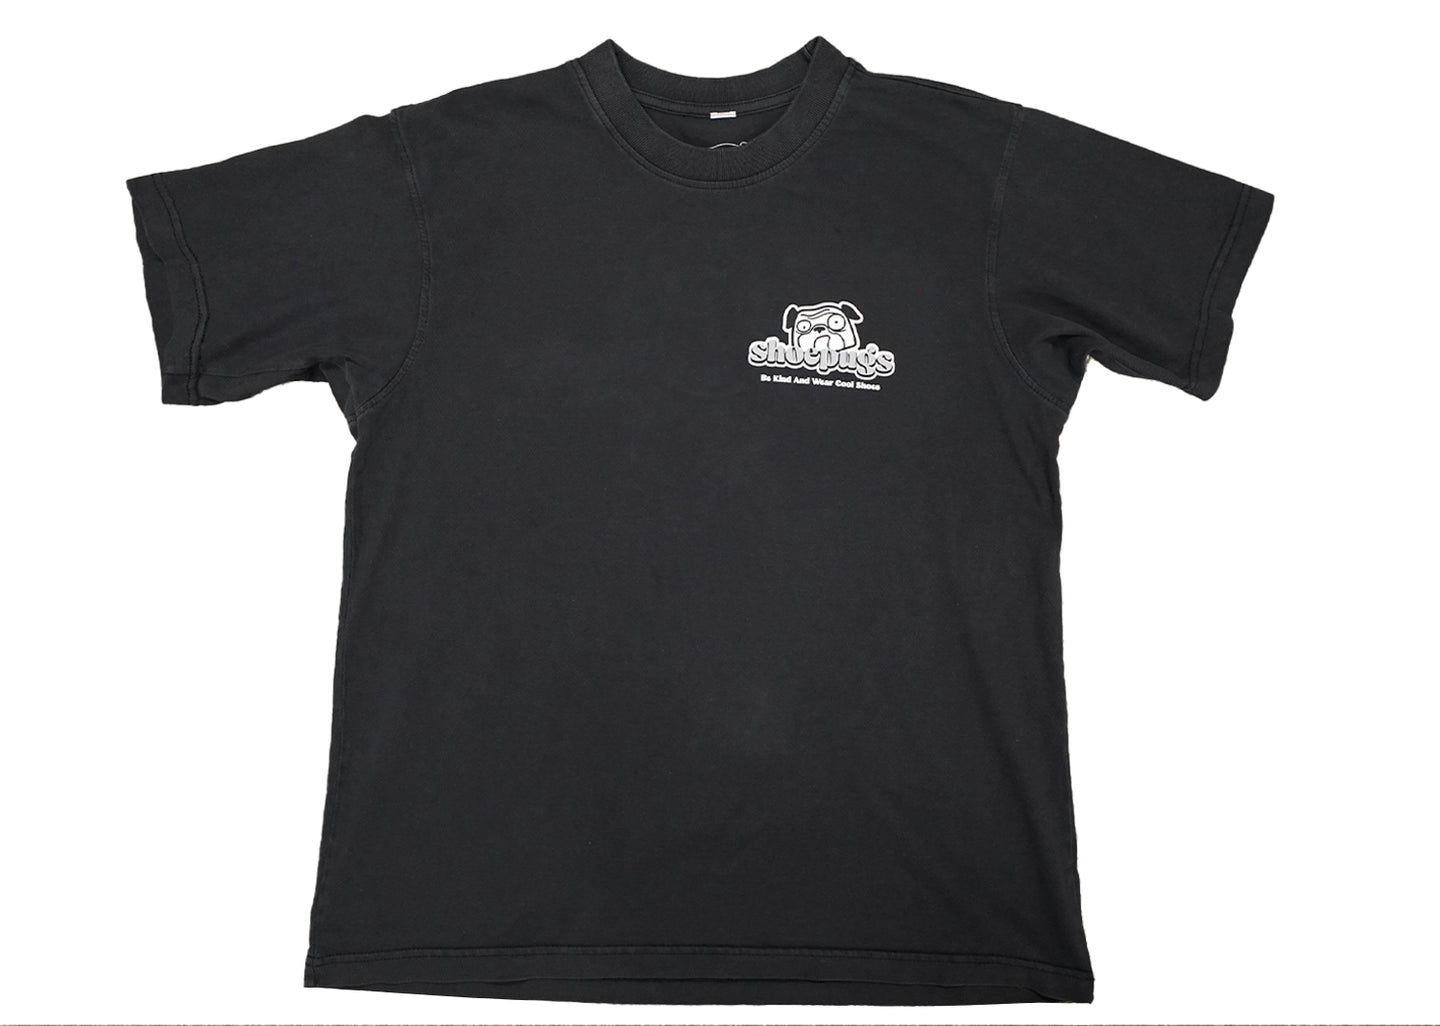 Shoepugs Exclusives Trillium T-Shirt (Black)